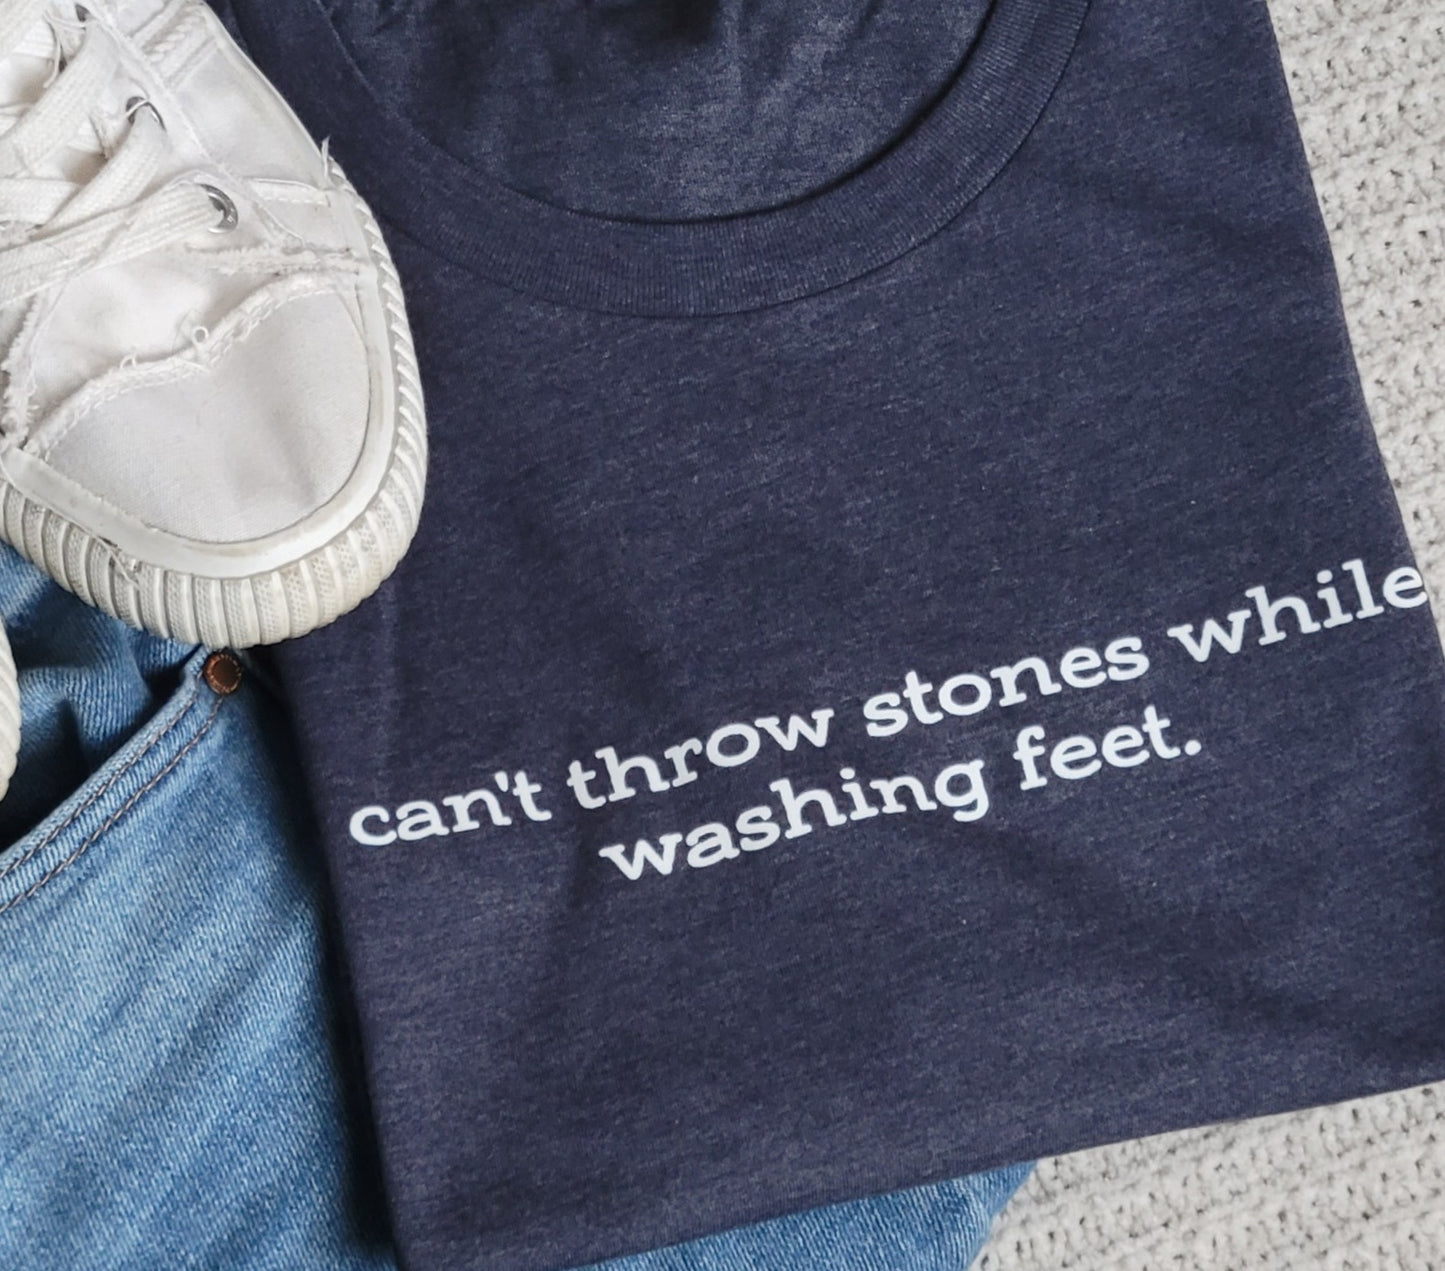 Can't Throw Stones While Washing Feet Women's T-Shirt . Christian Faith Tshirt